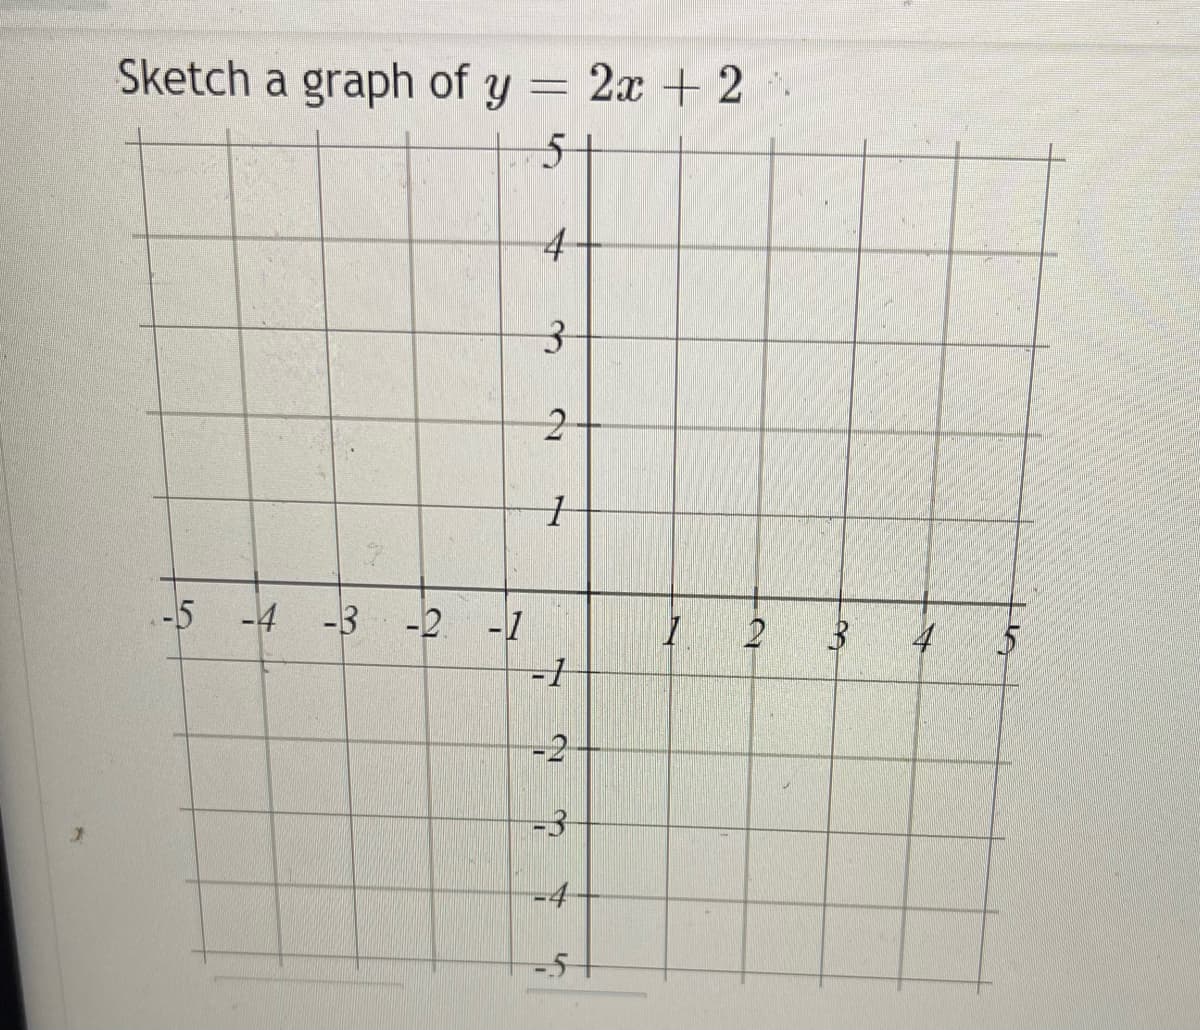 Sketch a graph of y =
2х + 2
51
.-5
-4
-3
-2
-1
2
-1
-2
-3
-4
-5+
